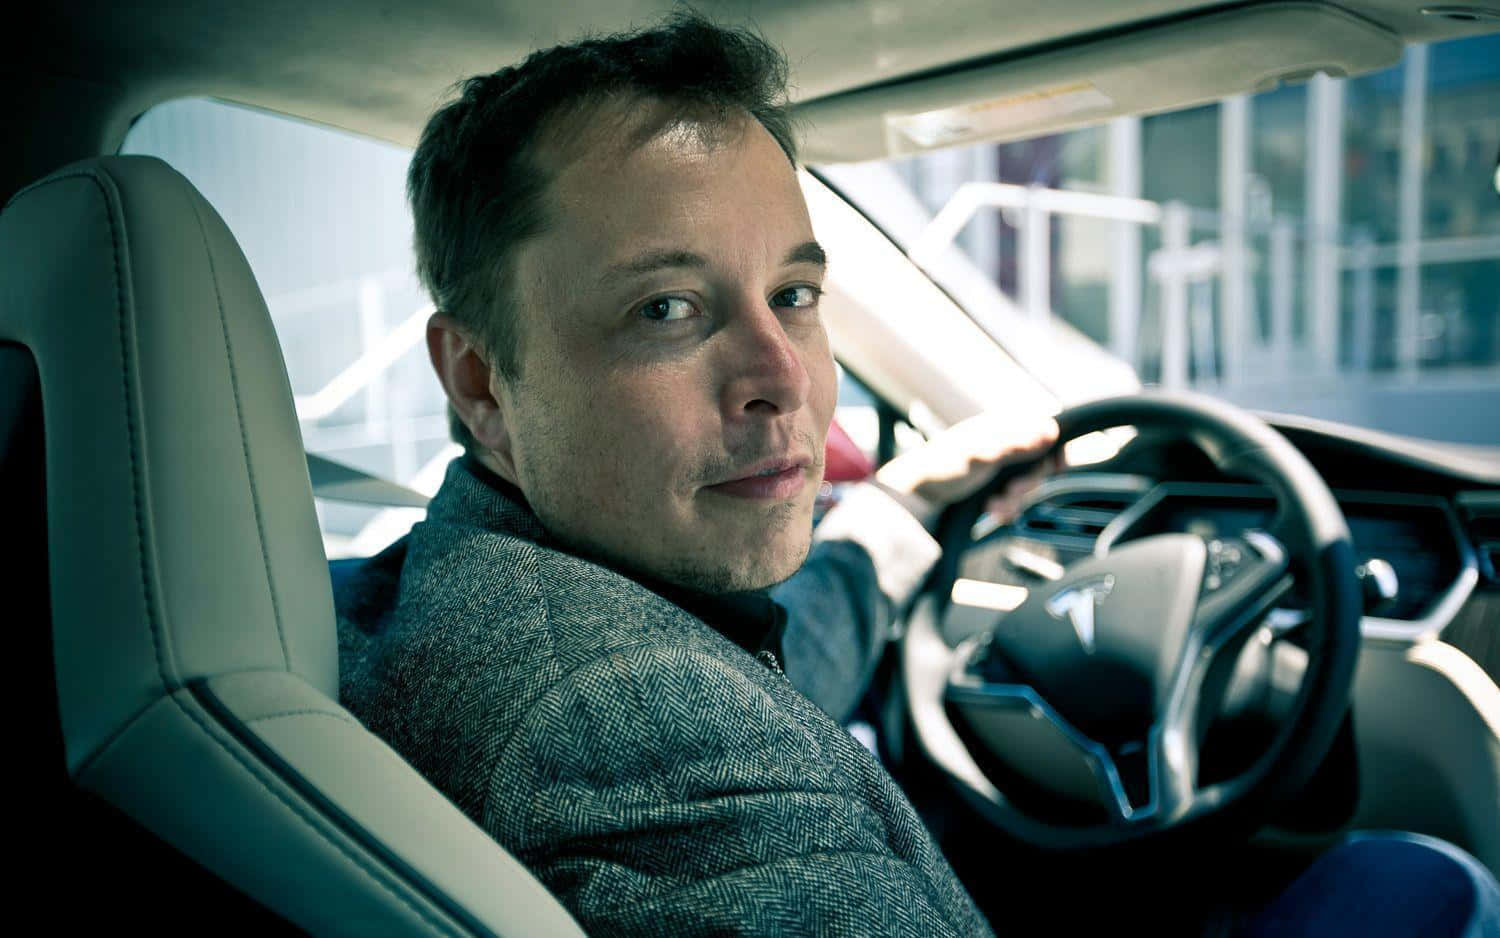 Tesla CEO and tech entrepreneur, Elon Musk